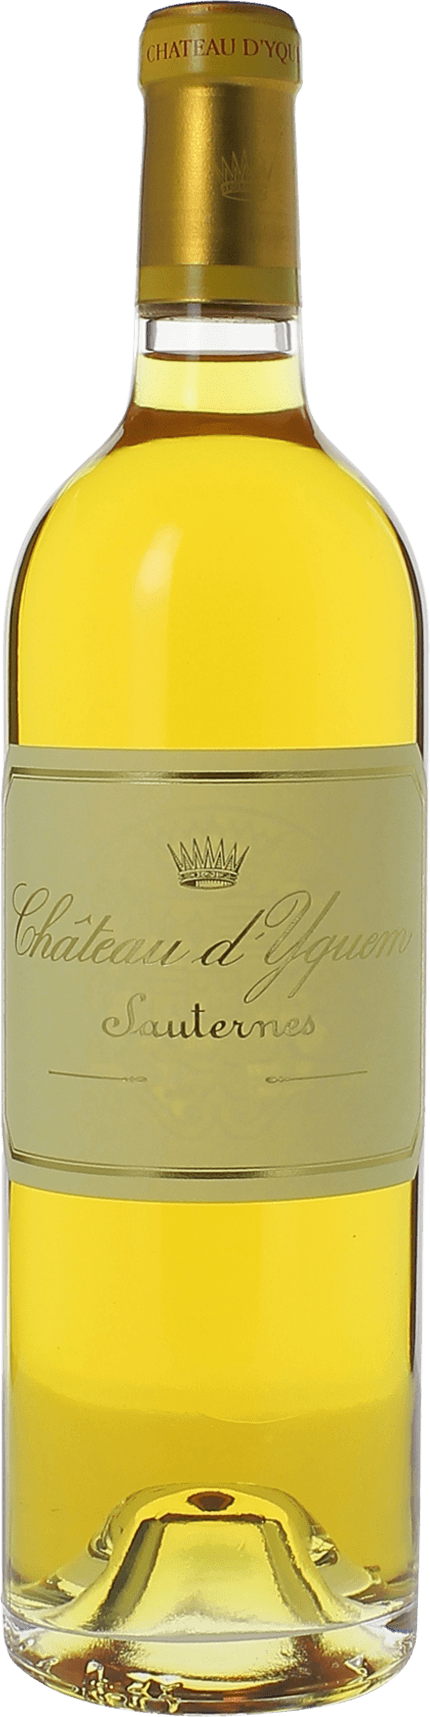 Yquem 1959 1er Grand cru class Sauternes, Bordeaux blanc